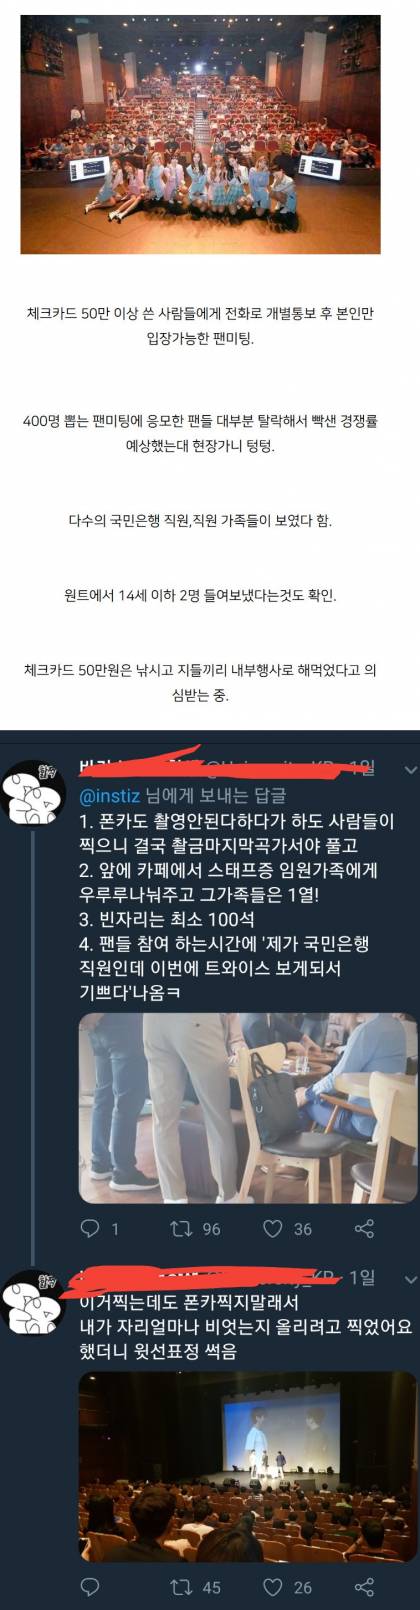 논란중인 국민카드 트와이스 팬미팅